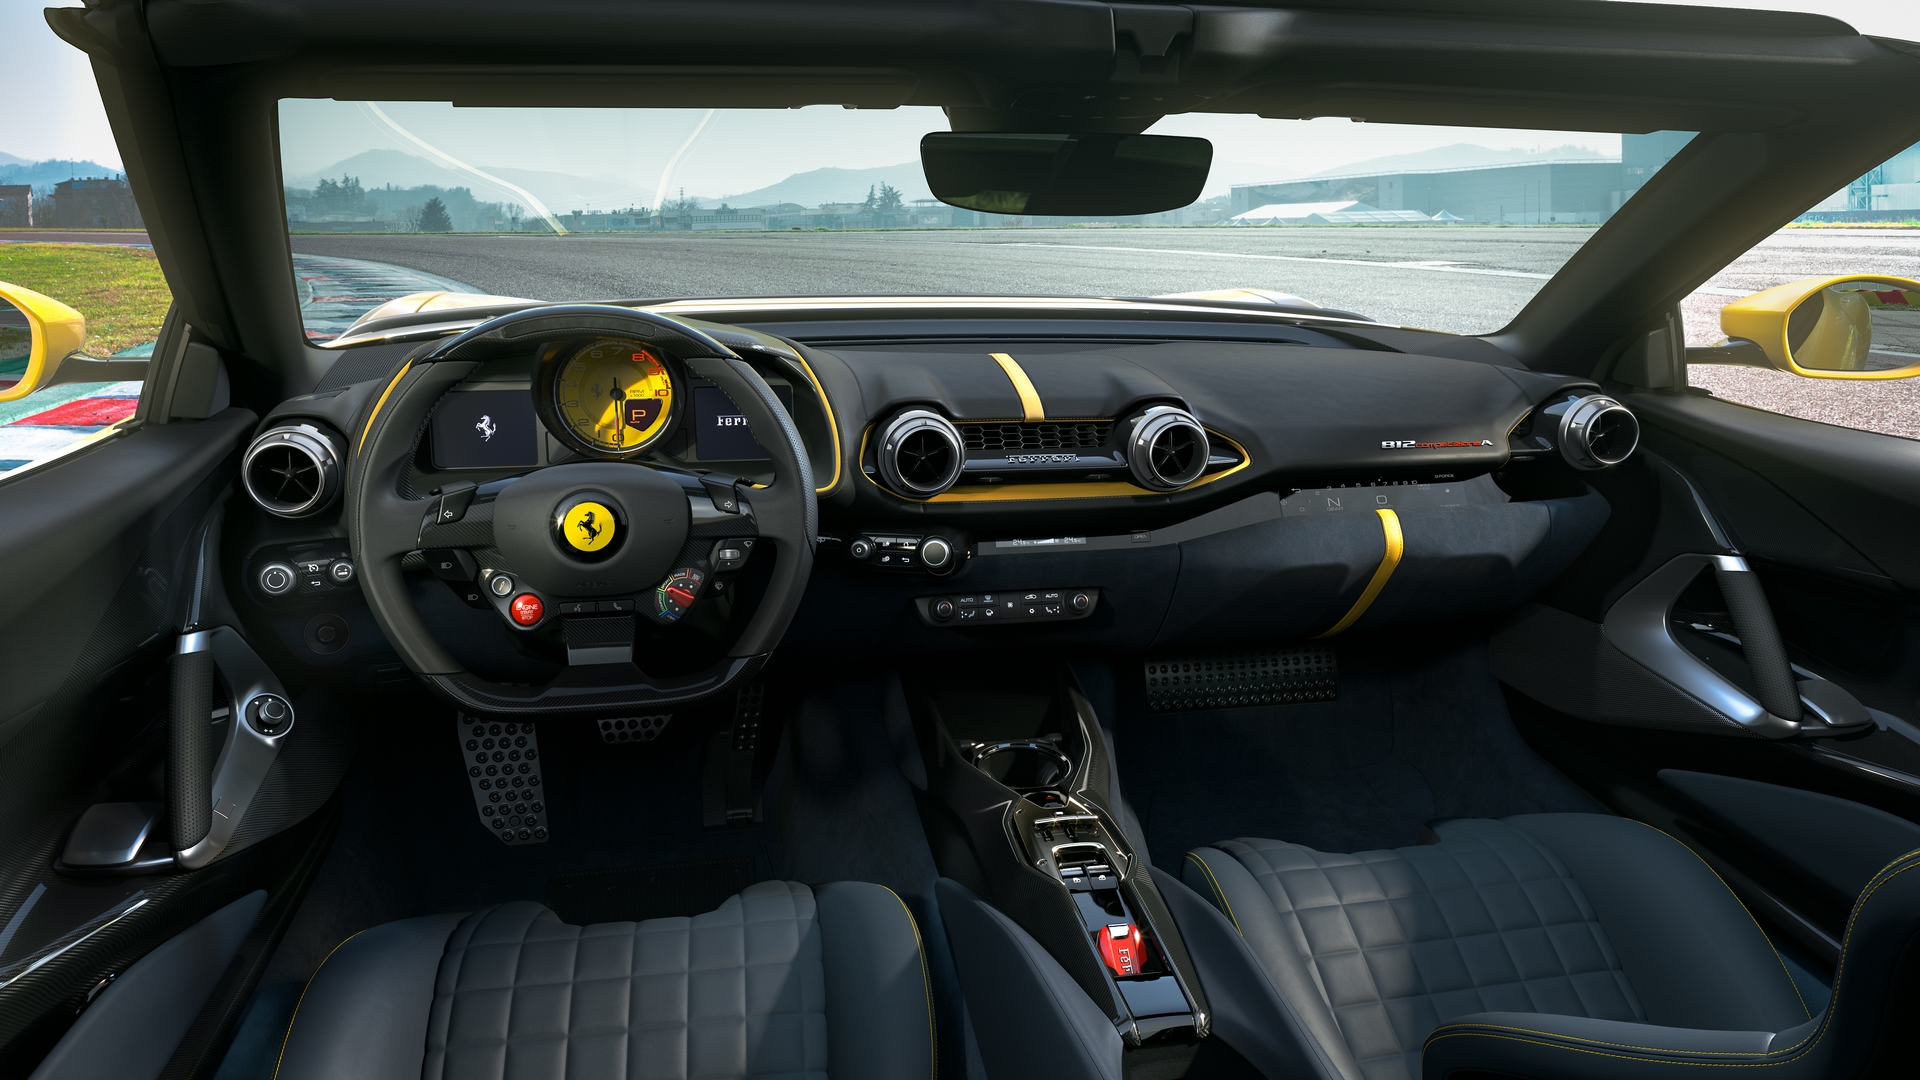 Ferrari%20812%20Competizione%20A%20(5).jpg